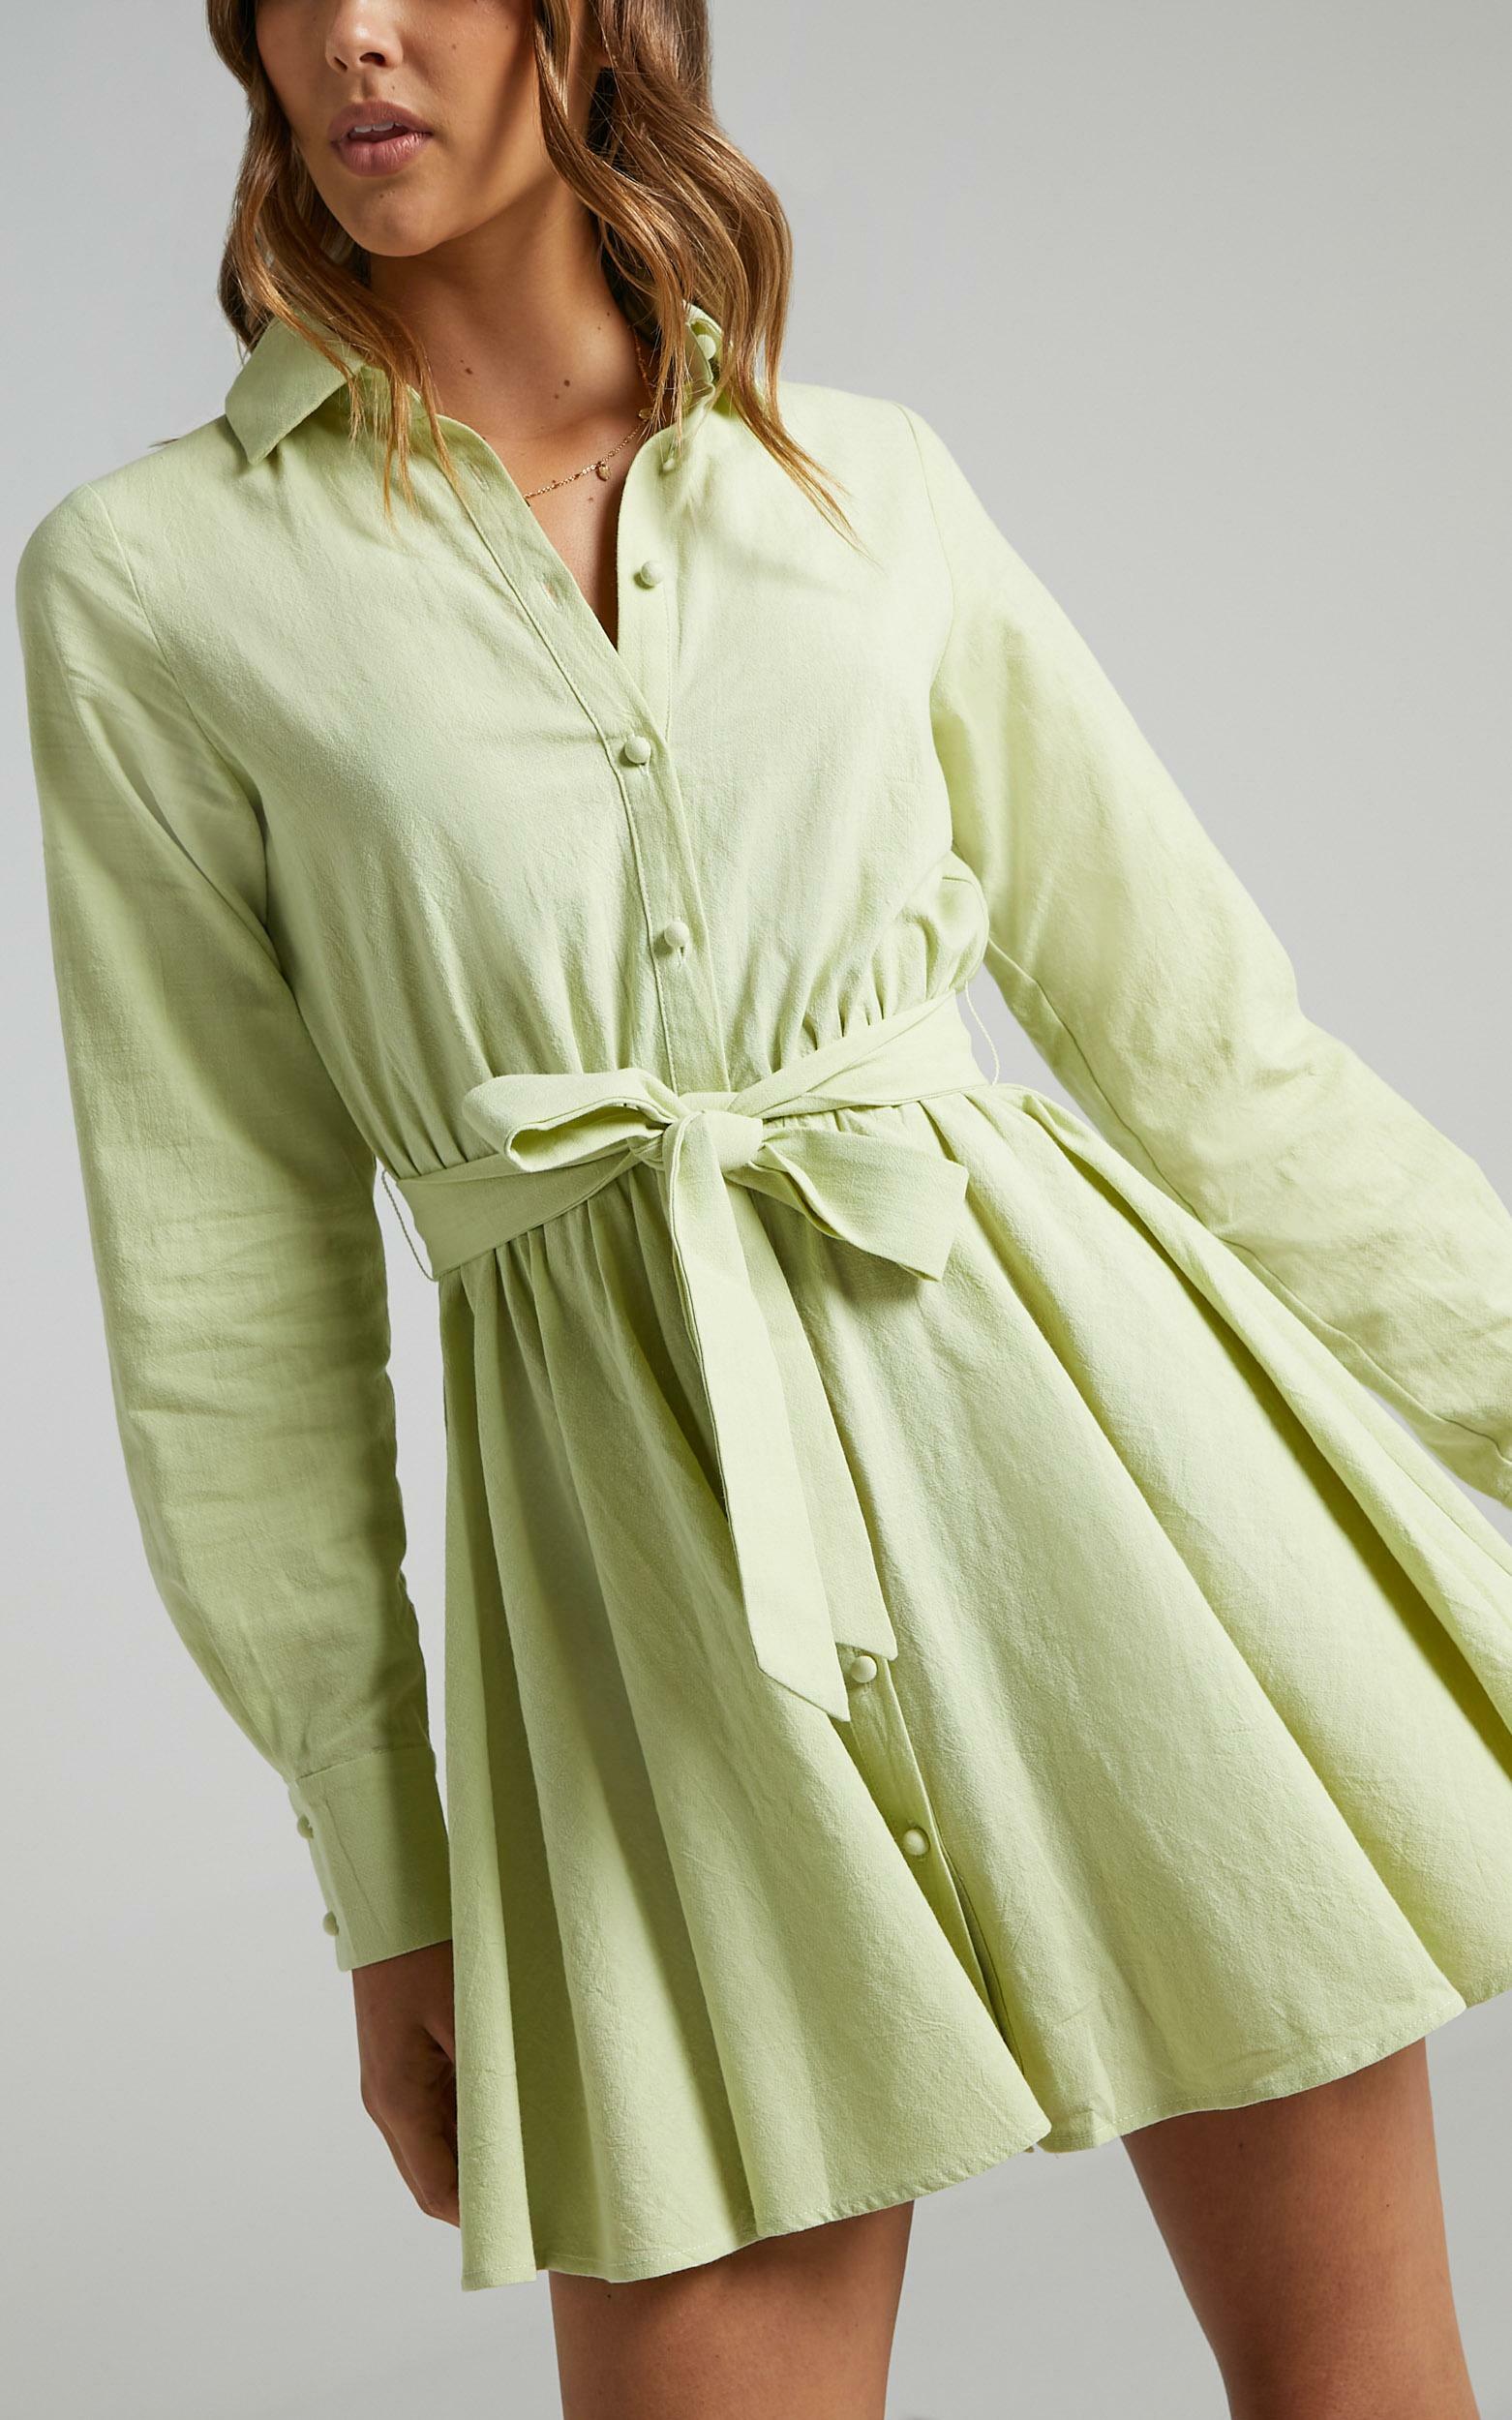 Ciri Dress in Citrus Green - 06, GRN3, hi-res image number null